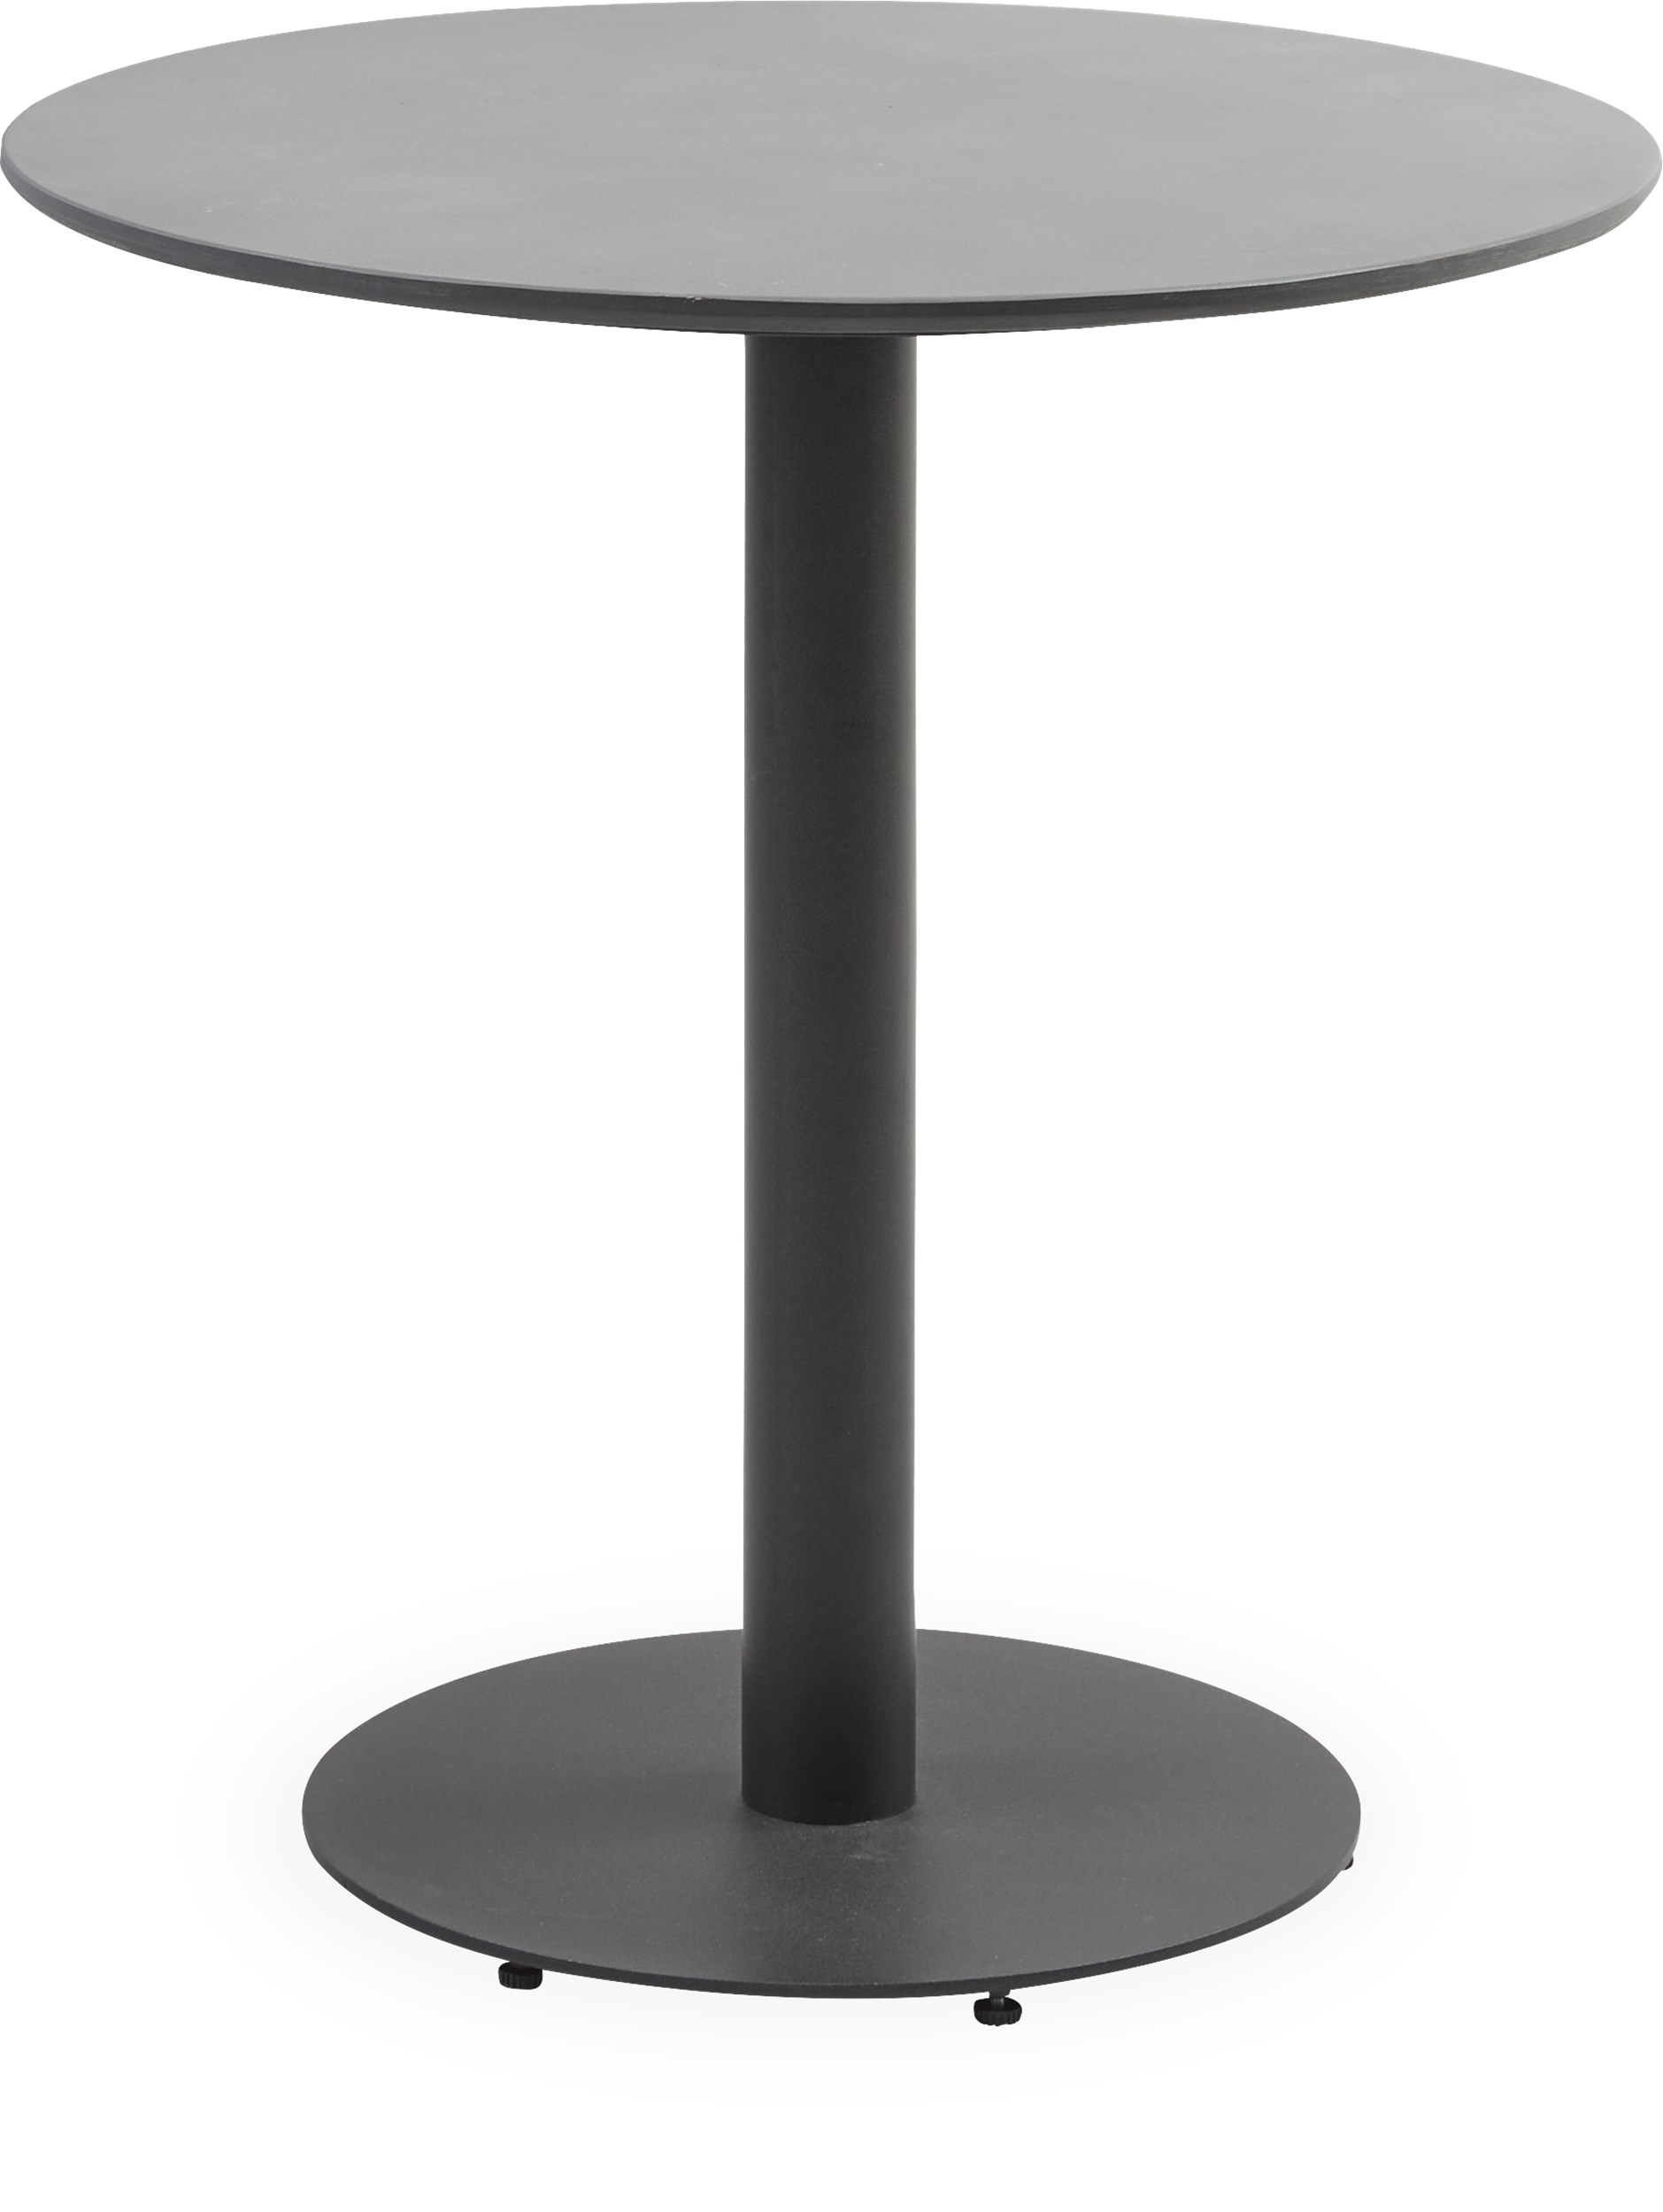 Arres Cafébord - Ovandel i grå durafit och stomme i svart pulverlackerad metall